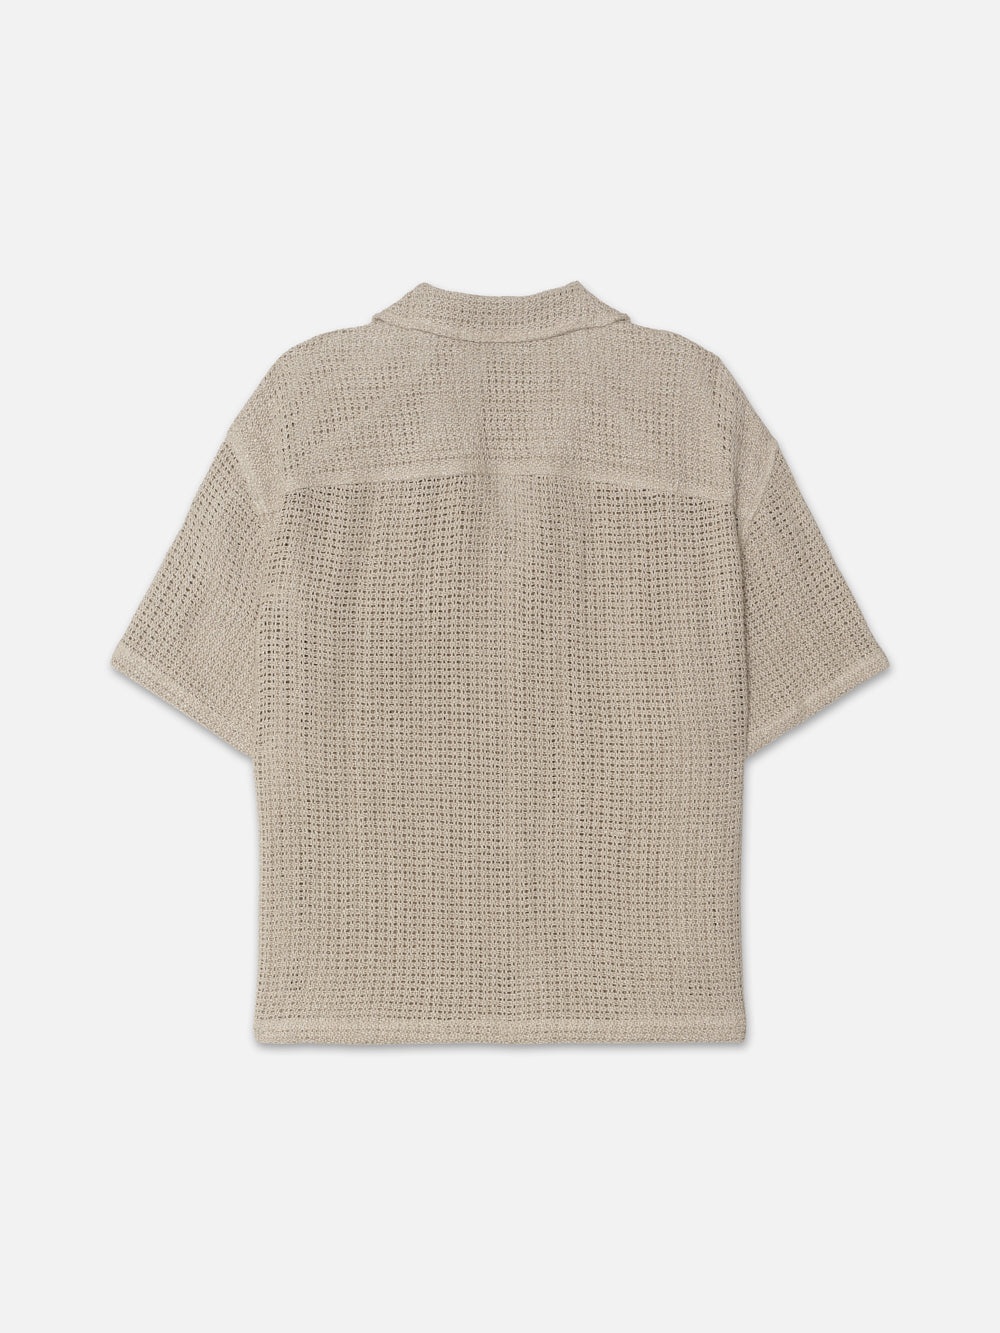 Open Weave Short Sleeve Shirt in Smoke Beige - 3